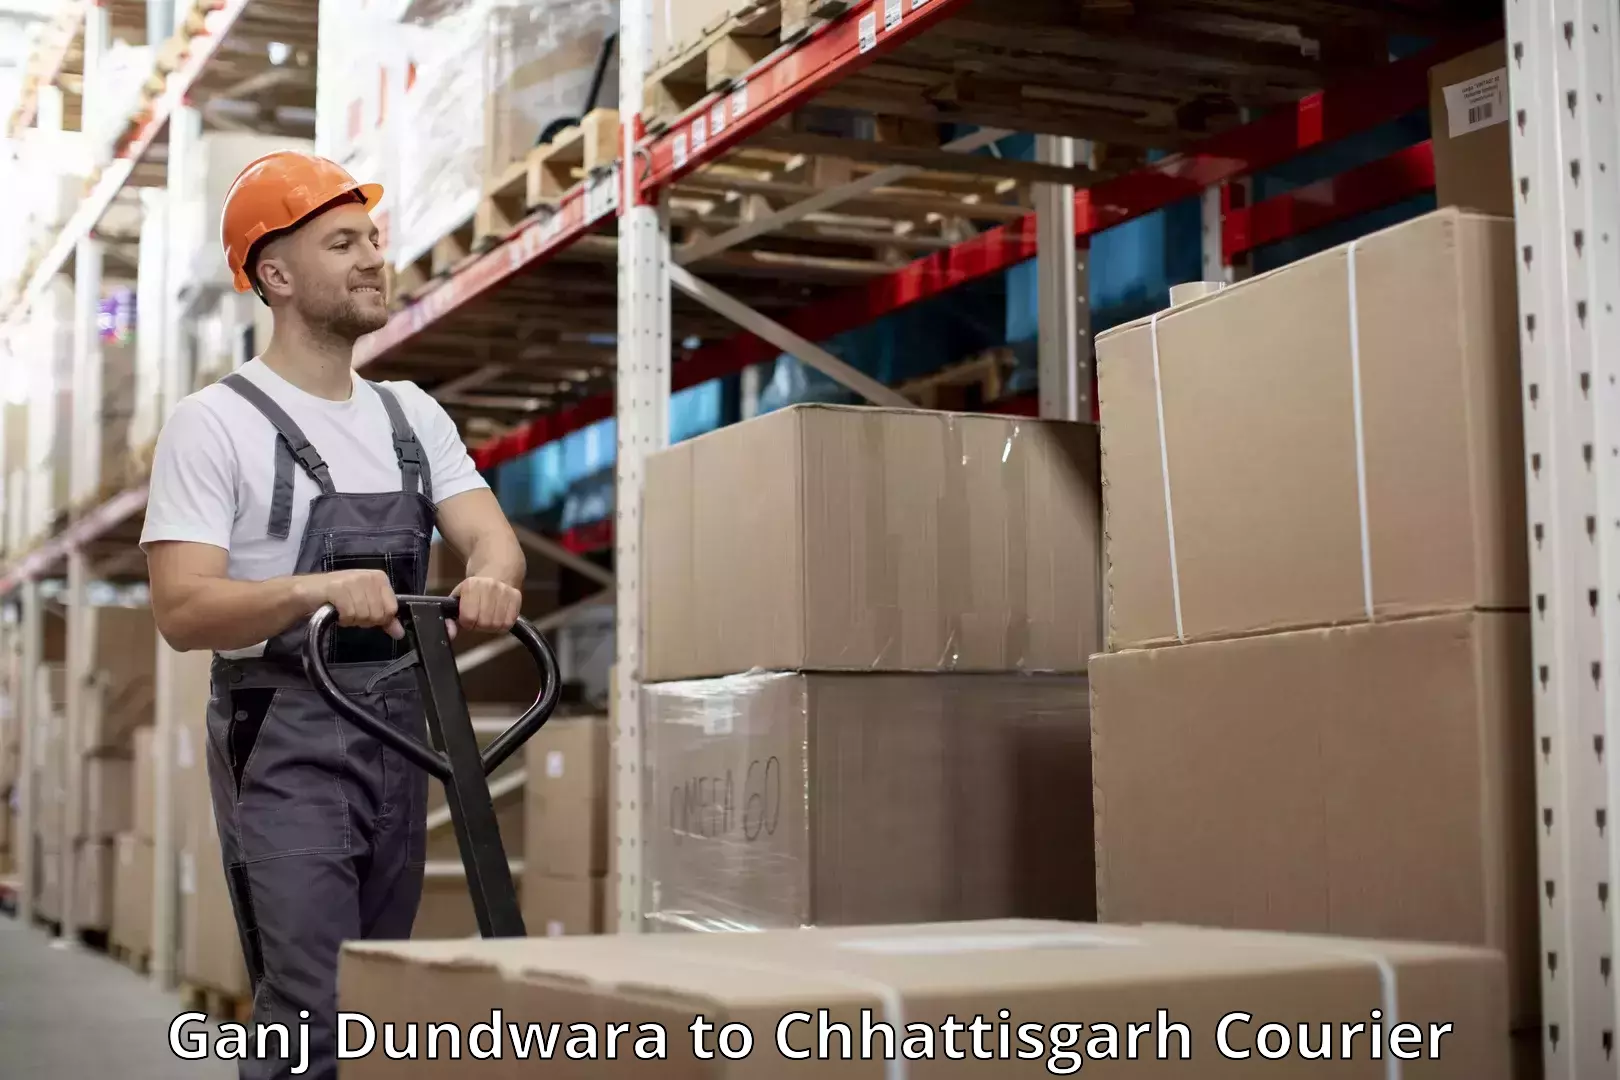 Baggage courier guide Ganj Dundwara to Chhattisgarh